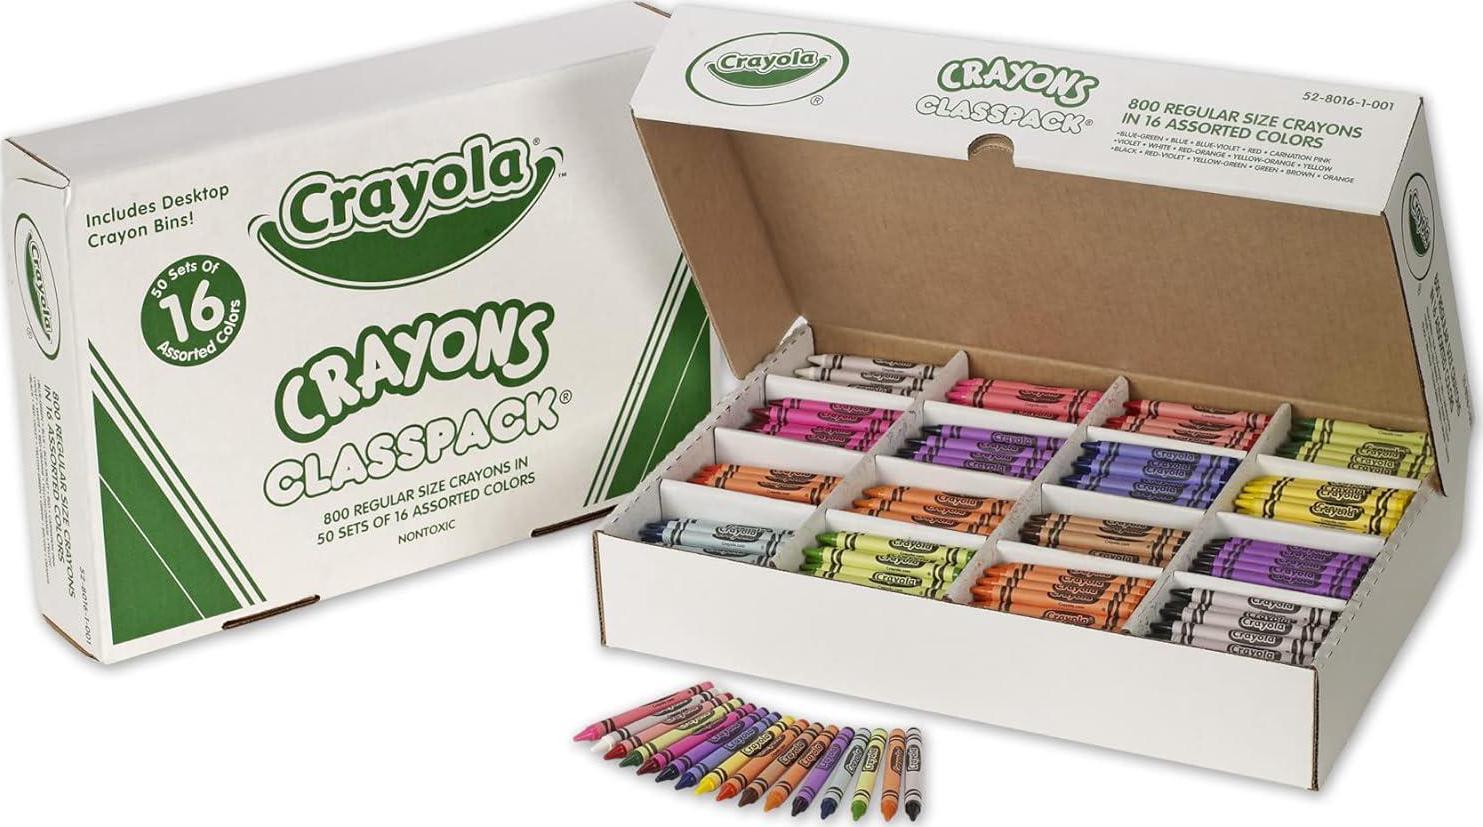 Tiny Land® Toddler Crayons